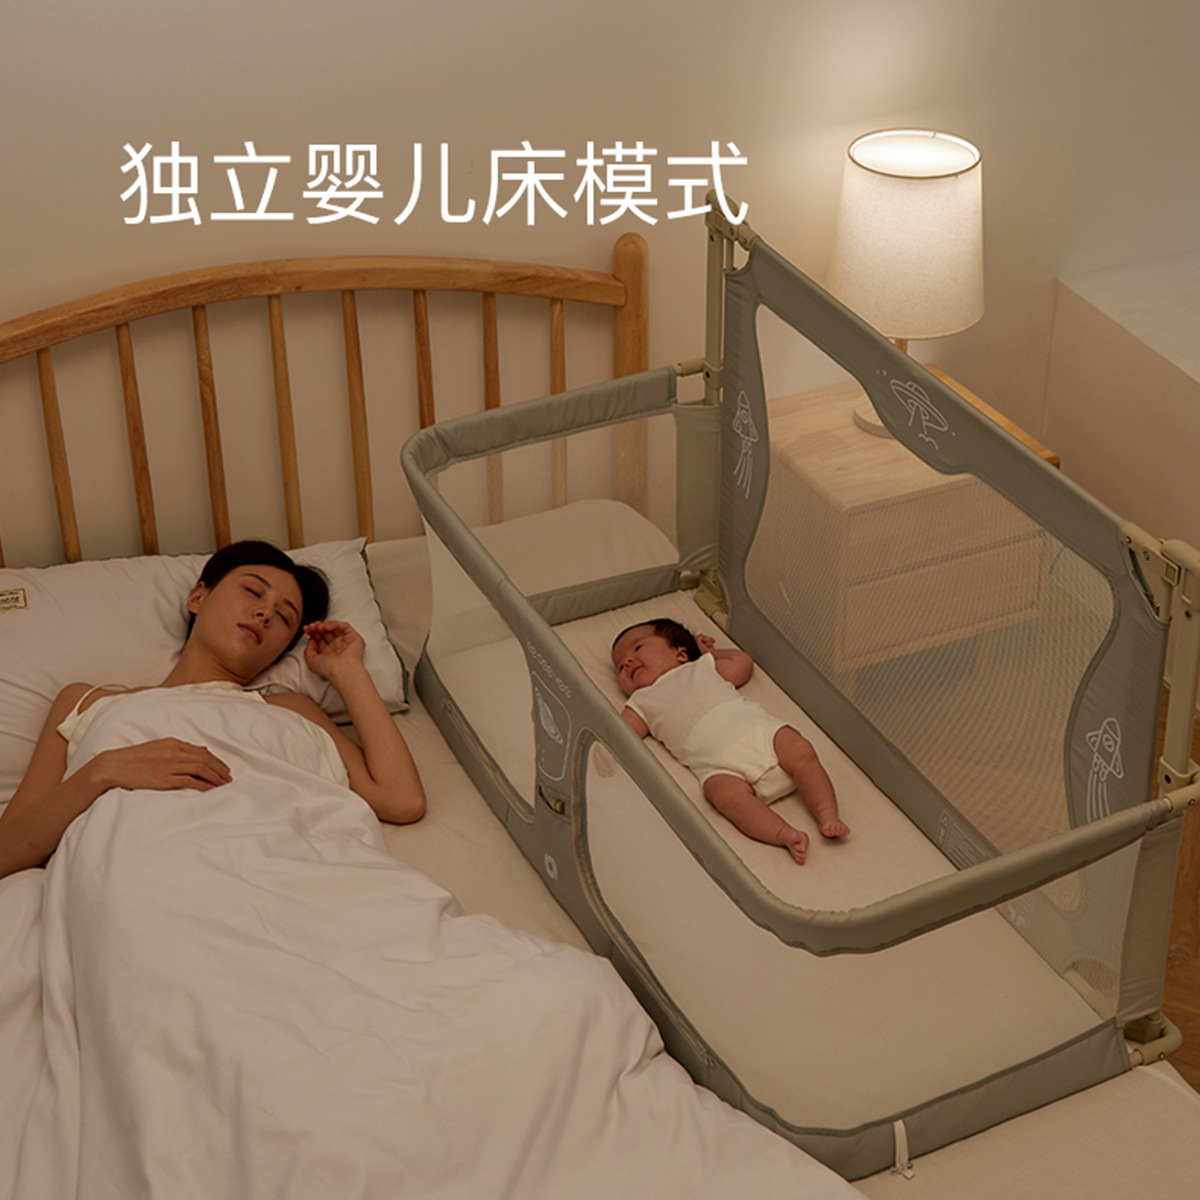 凡锦床上宝宝床床中床睡床可移动婴儿床宝宝便携式多功能床防压床